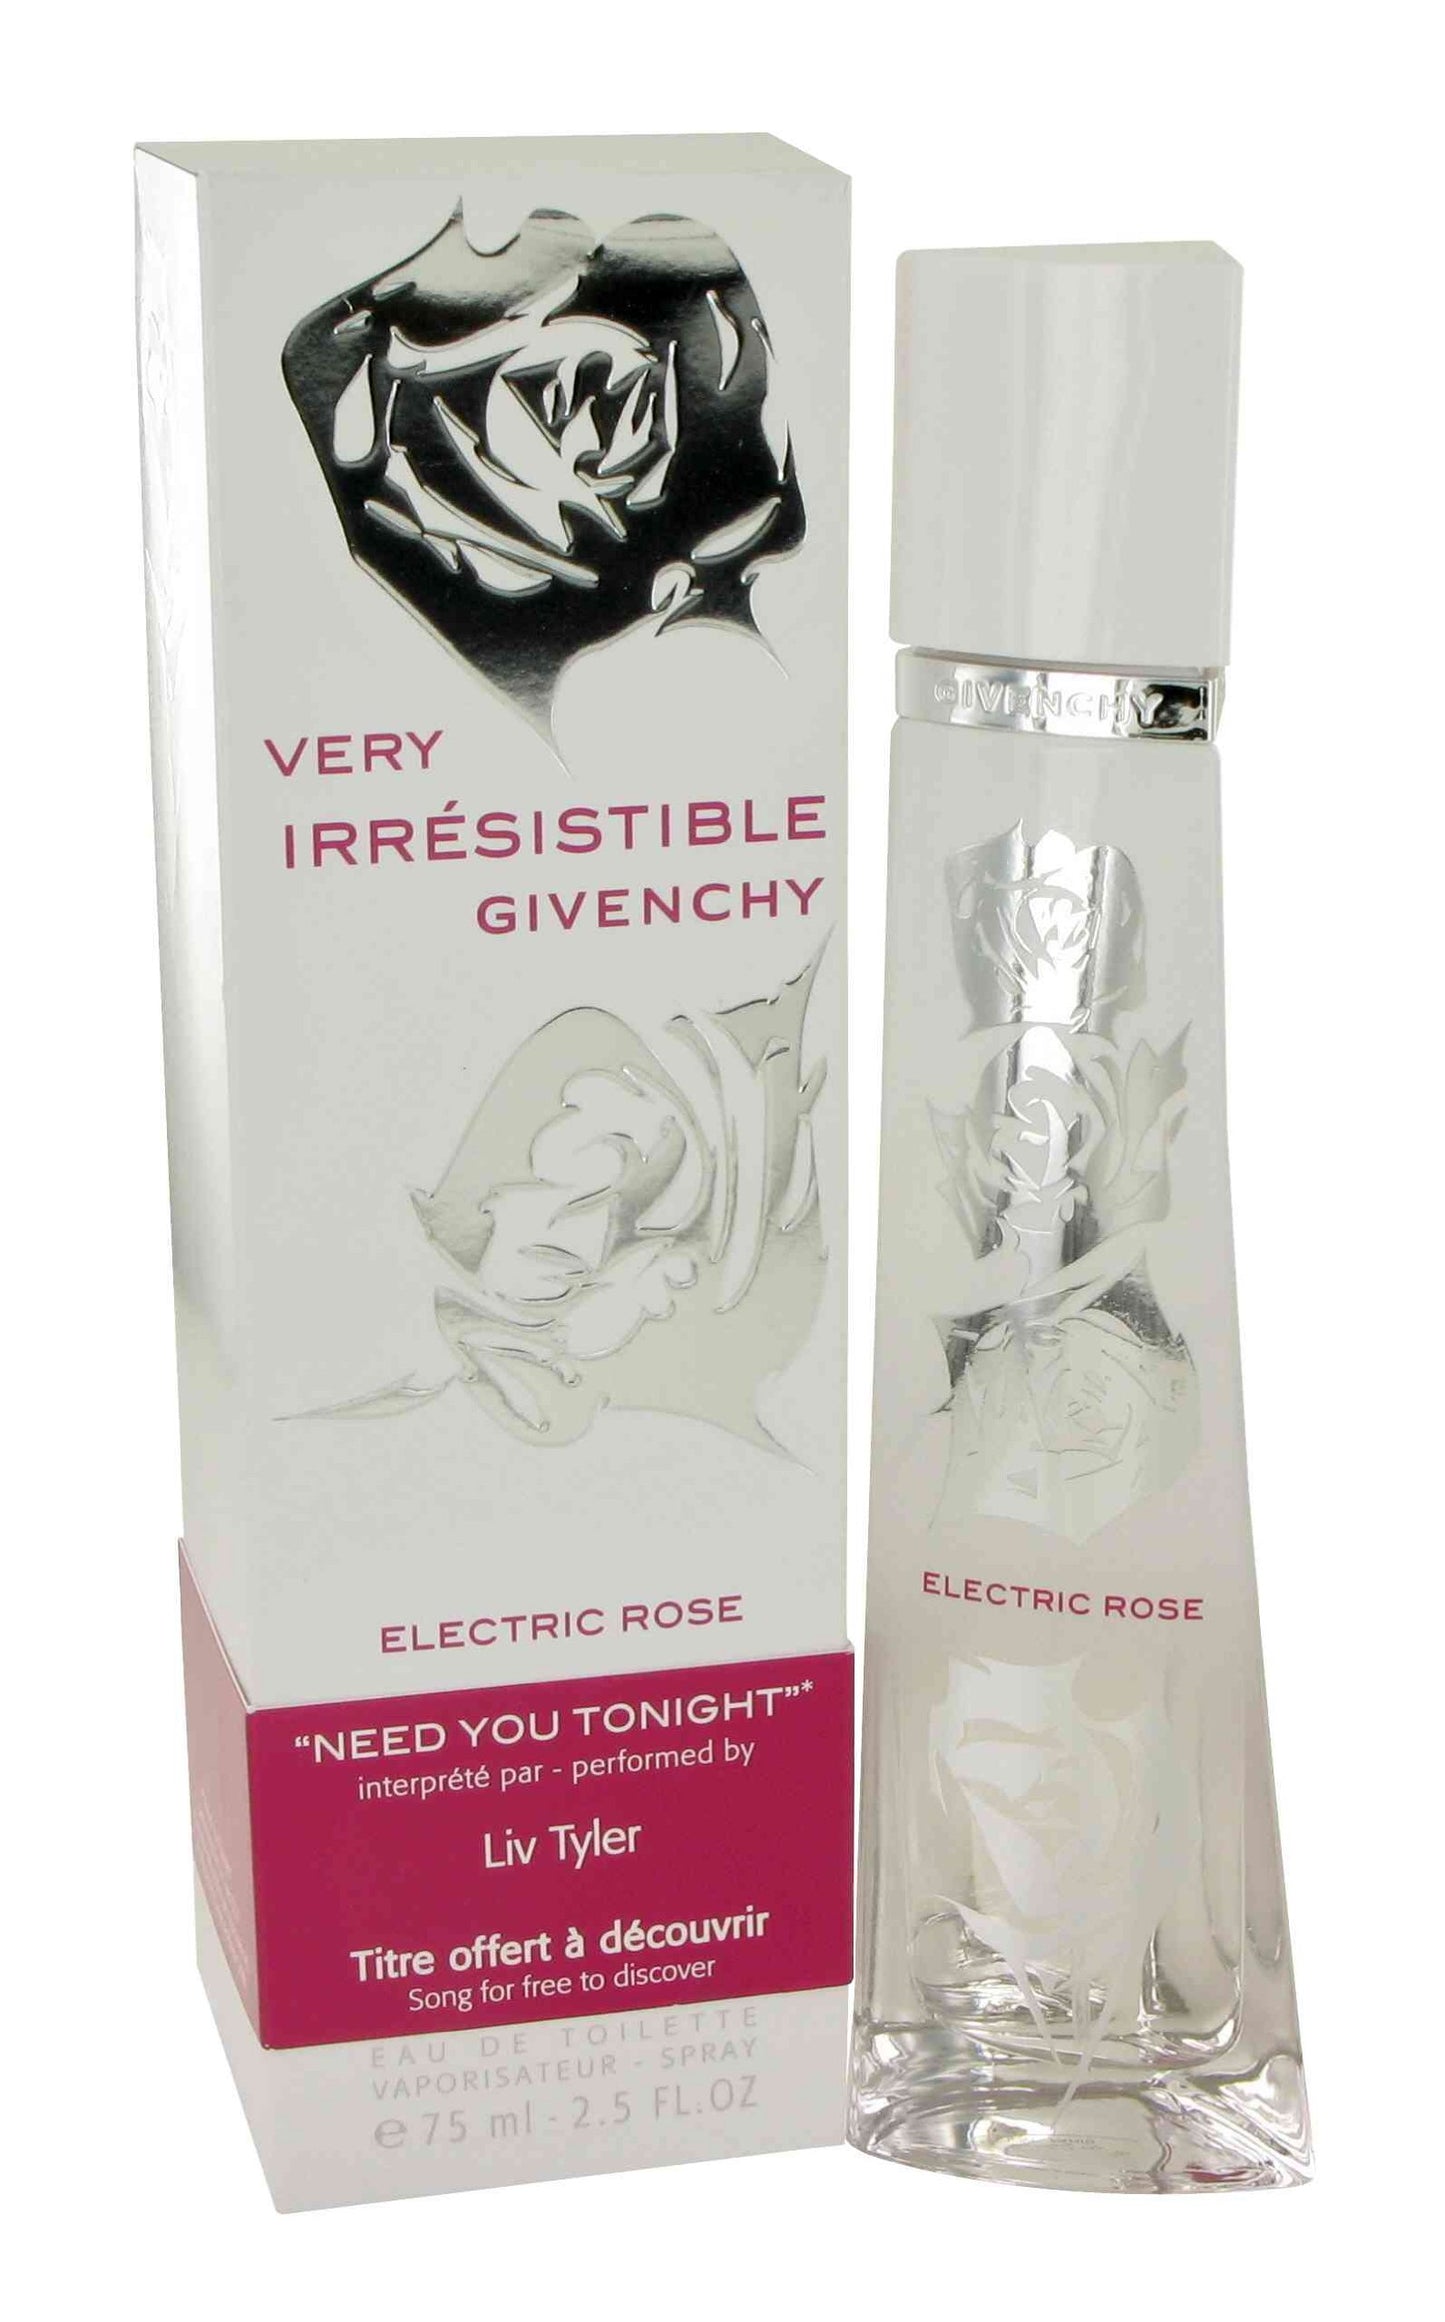 Very Irresistible Givenchy Electric Rose Givenchy para dama 75ml